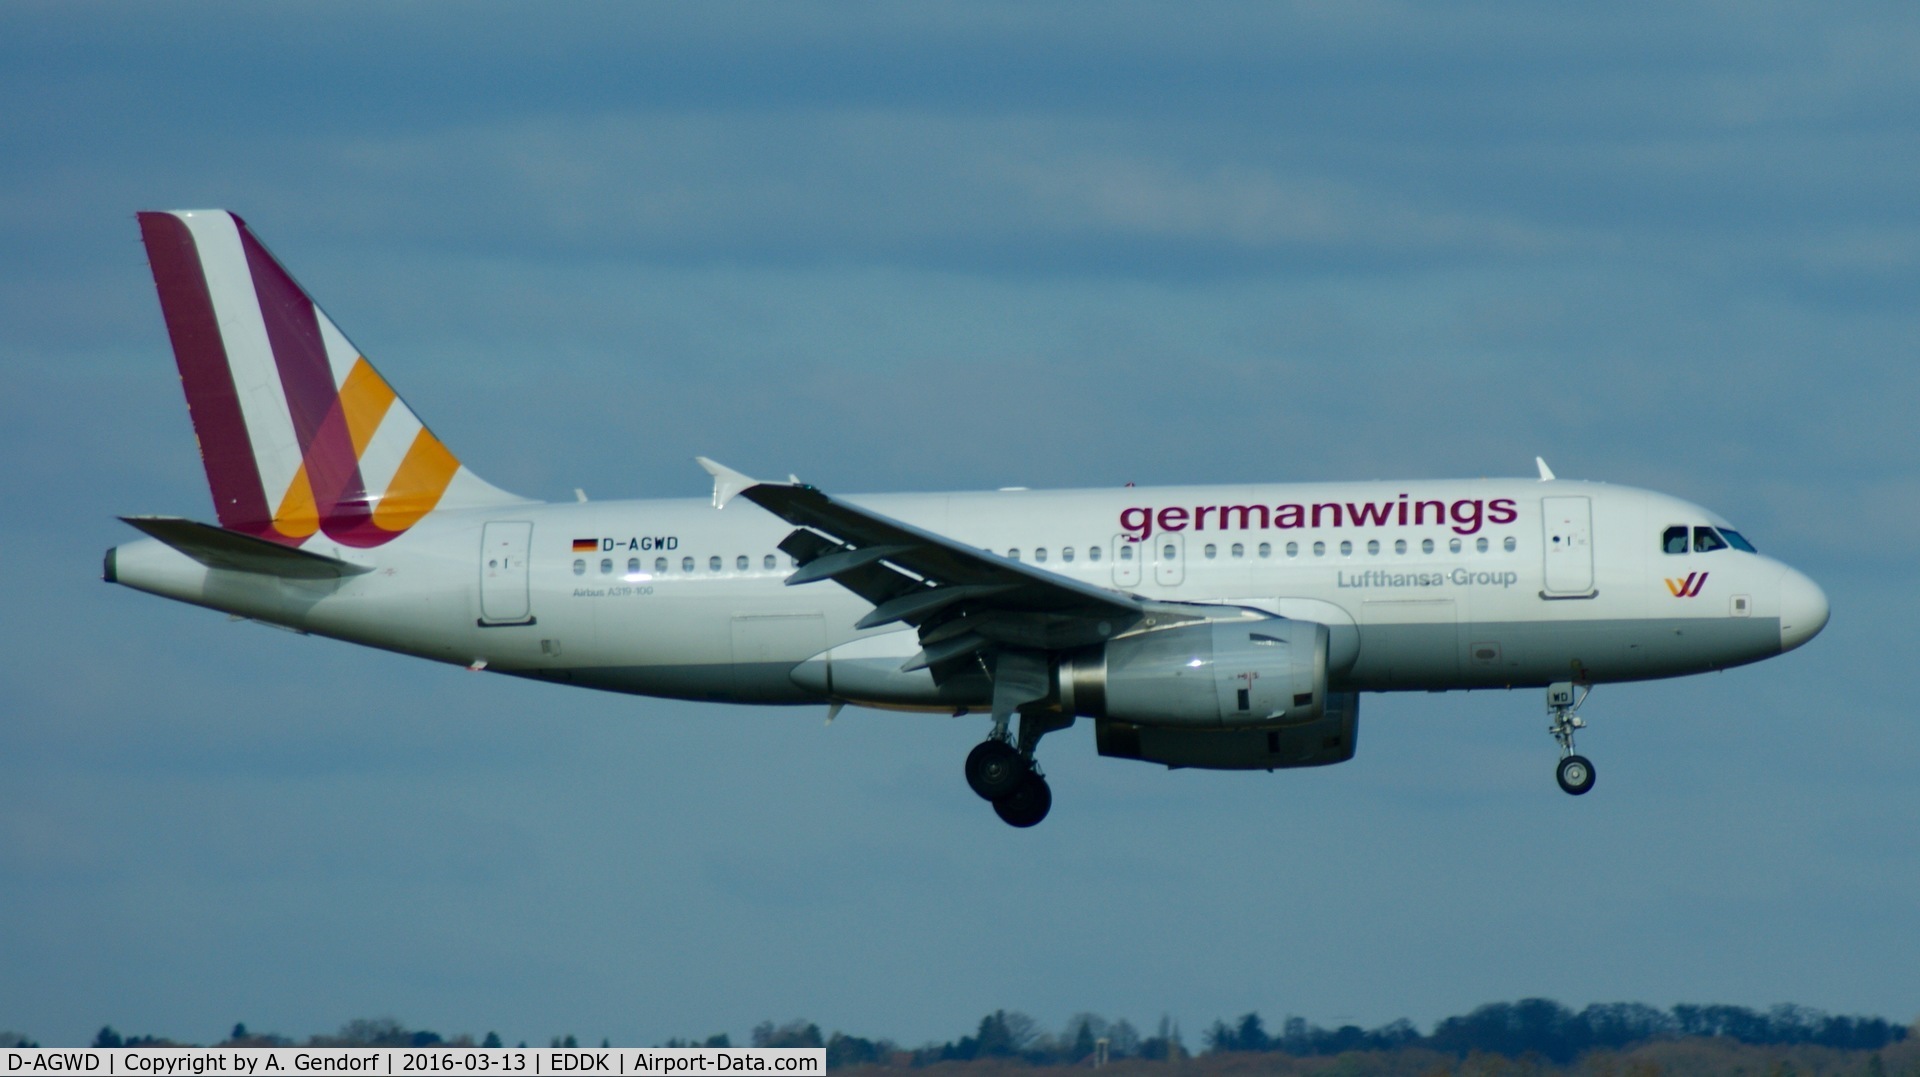 D-AGWD, 2007 Airbus A319-132 C/N 3011, Germanwings, is here landing at Köln / Bonn Airport(EDDK)